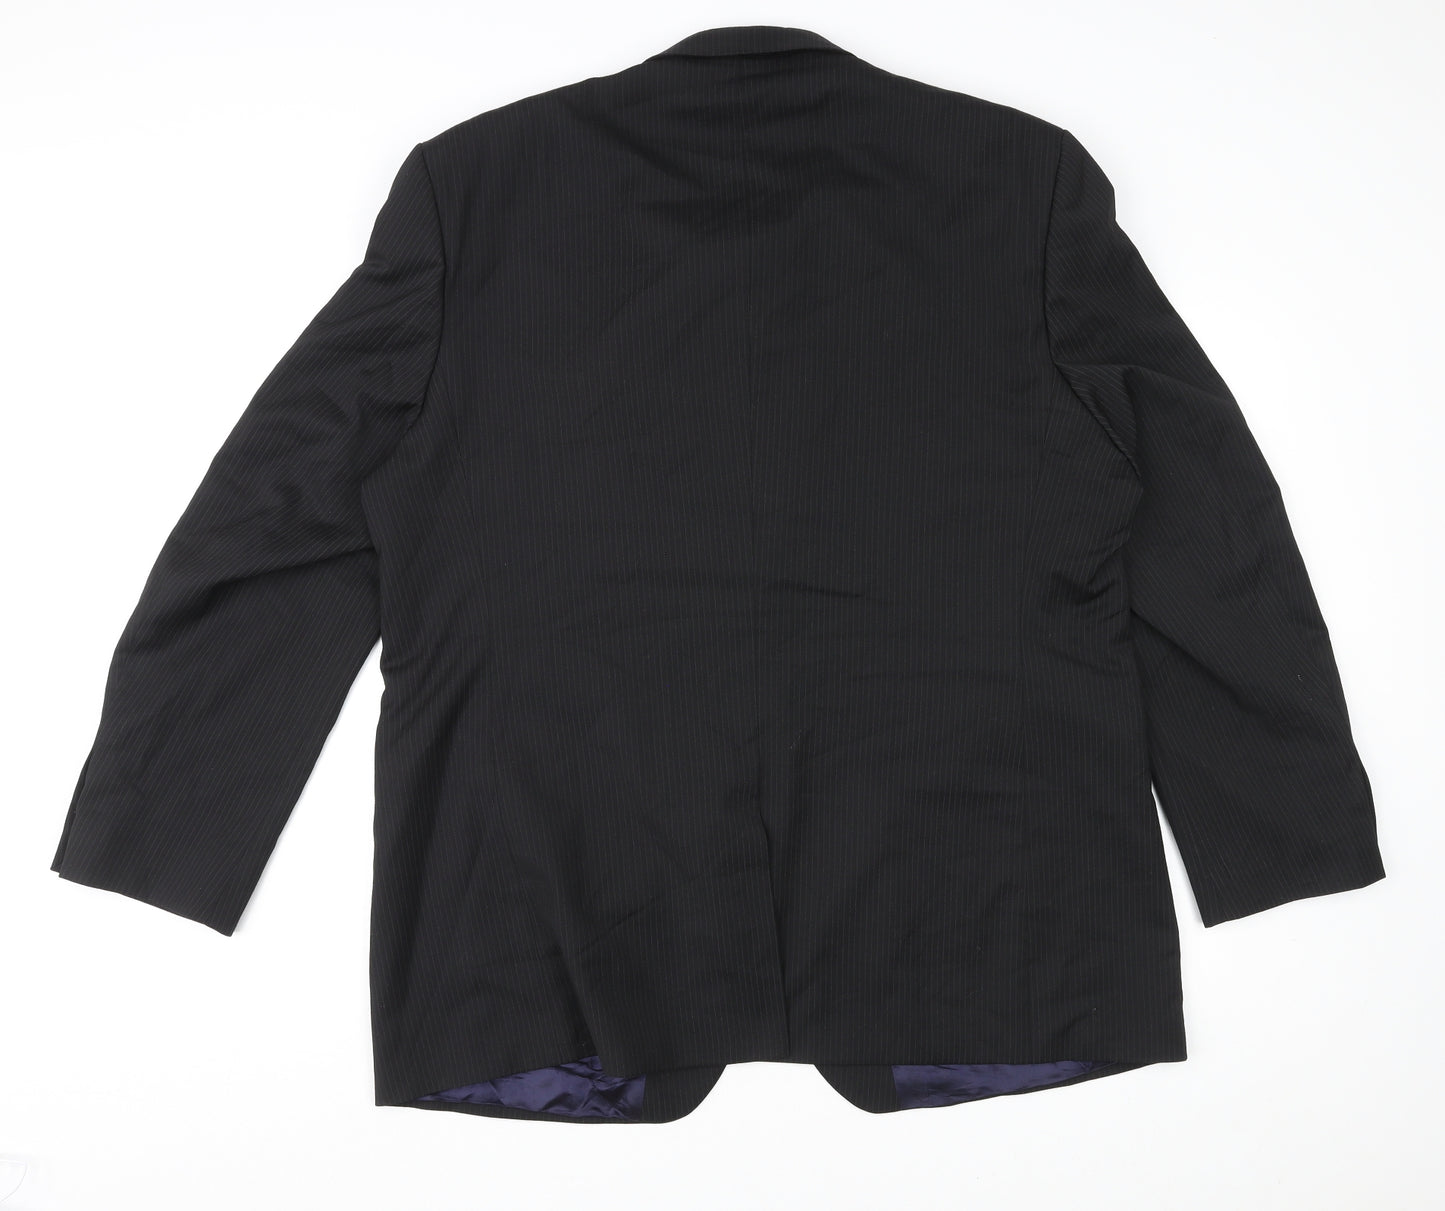 BHS Mens Black Polyester Jacket Suit Jacket Size 48 Regular